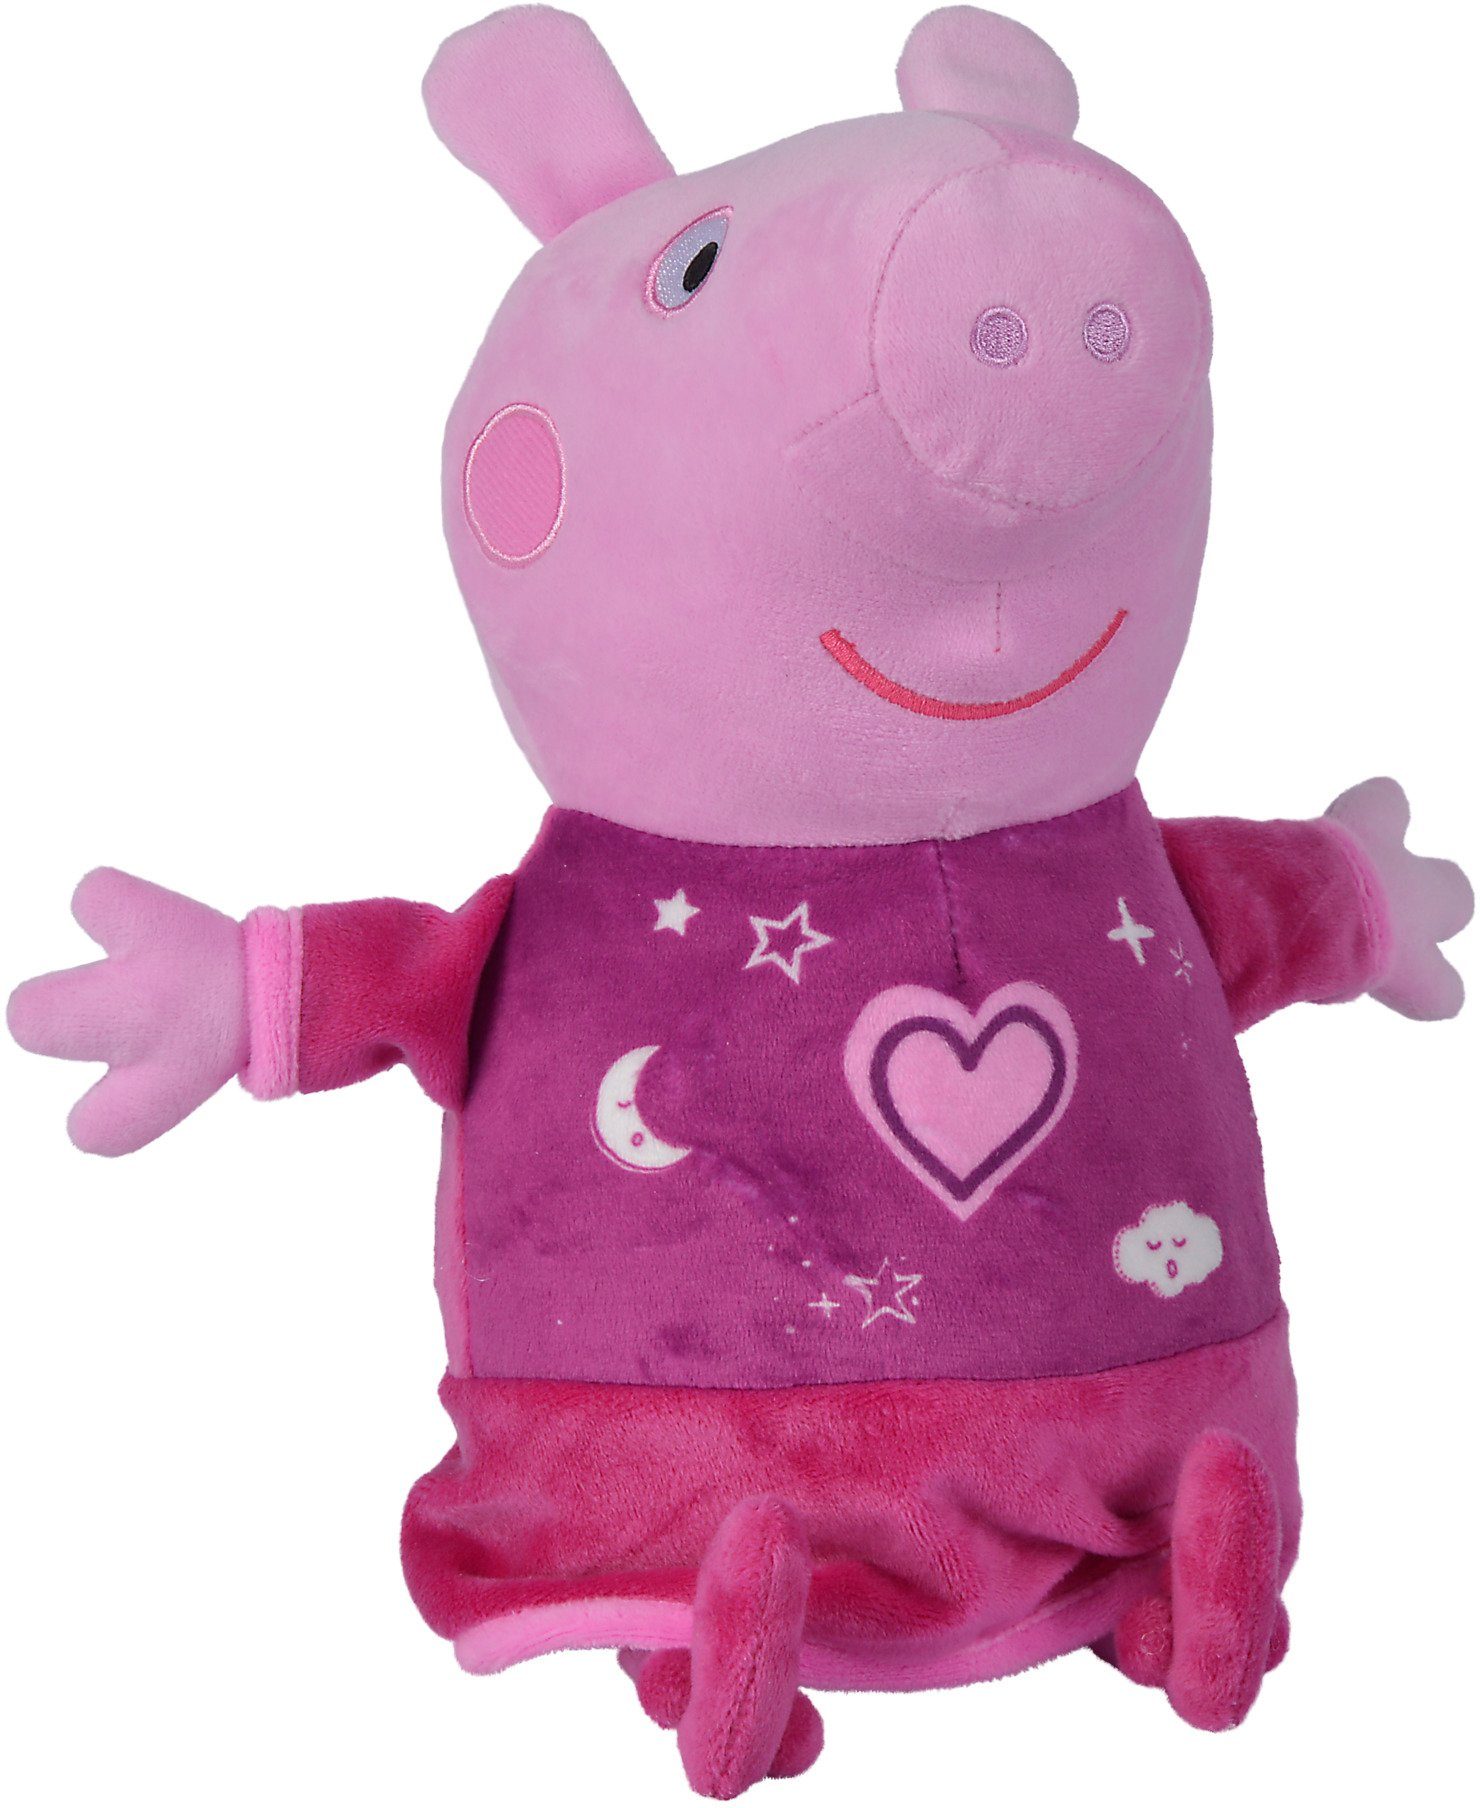 SIMBA Plüschfigur Peppa Pig, Gute Nacht Peppa, mit Sound und Schlummerlicht